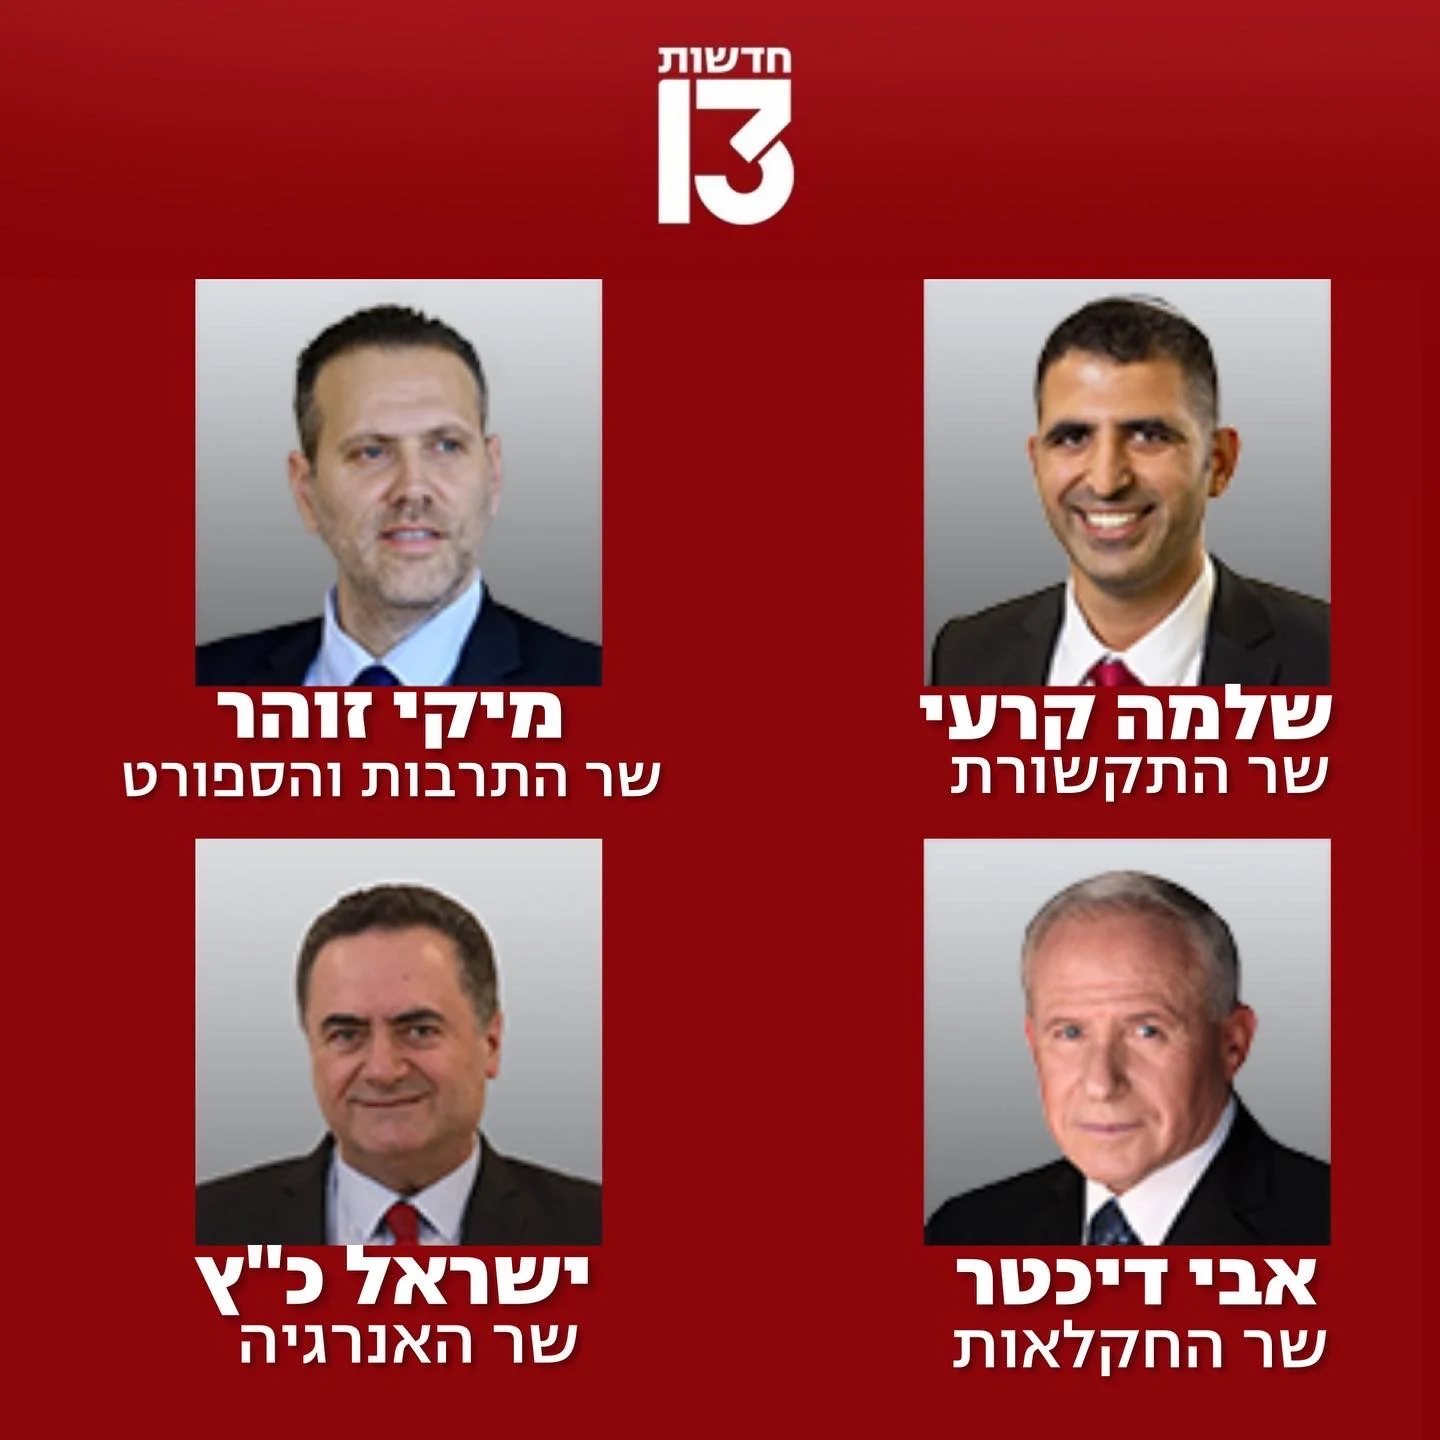 30 שרים, מתוכם רק 5 נשים: ממשלת ישראל ה-37